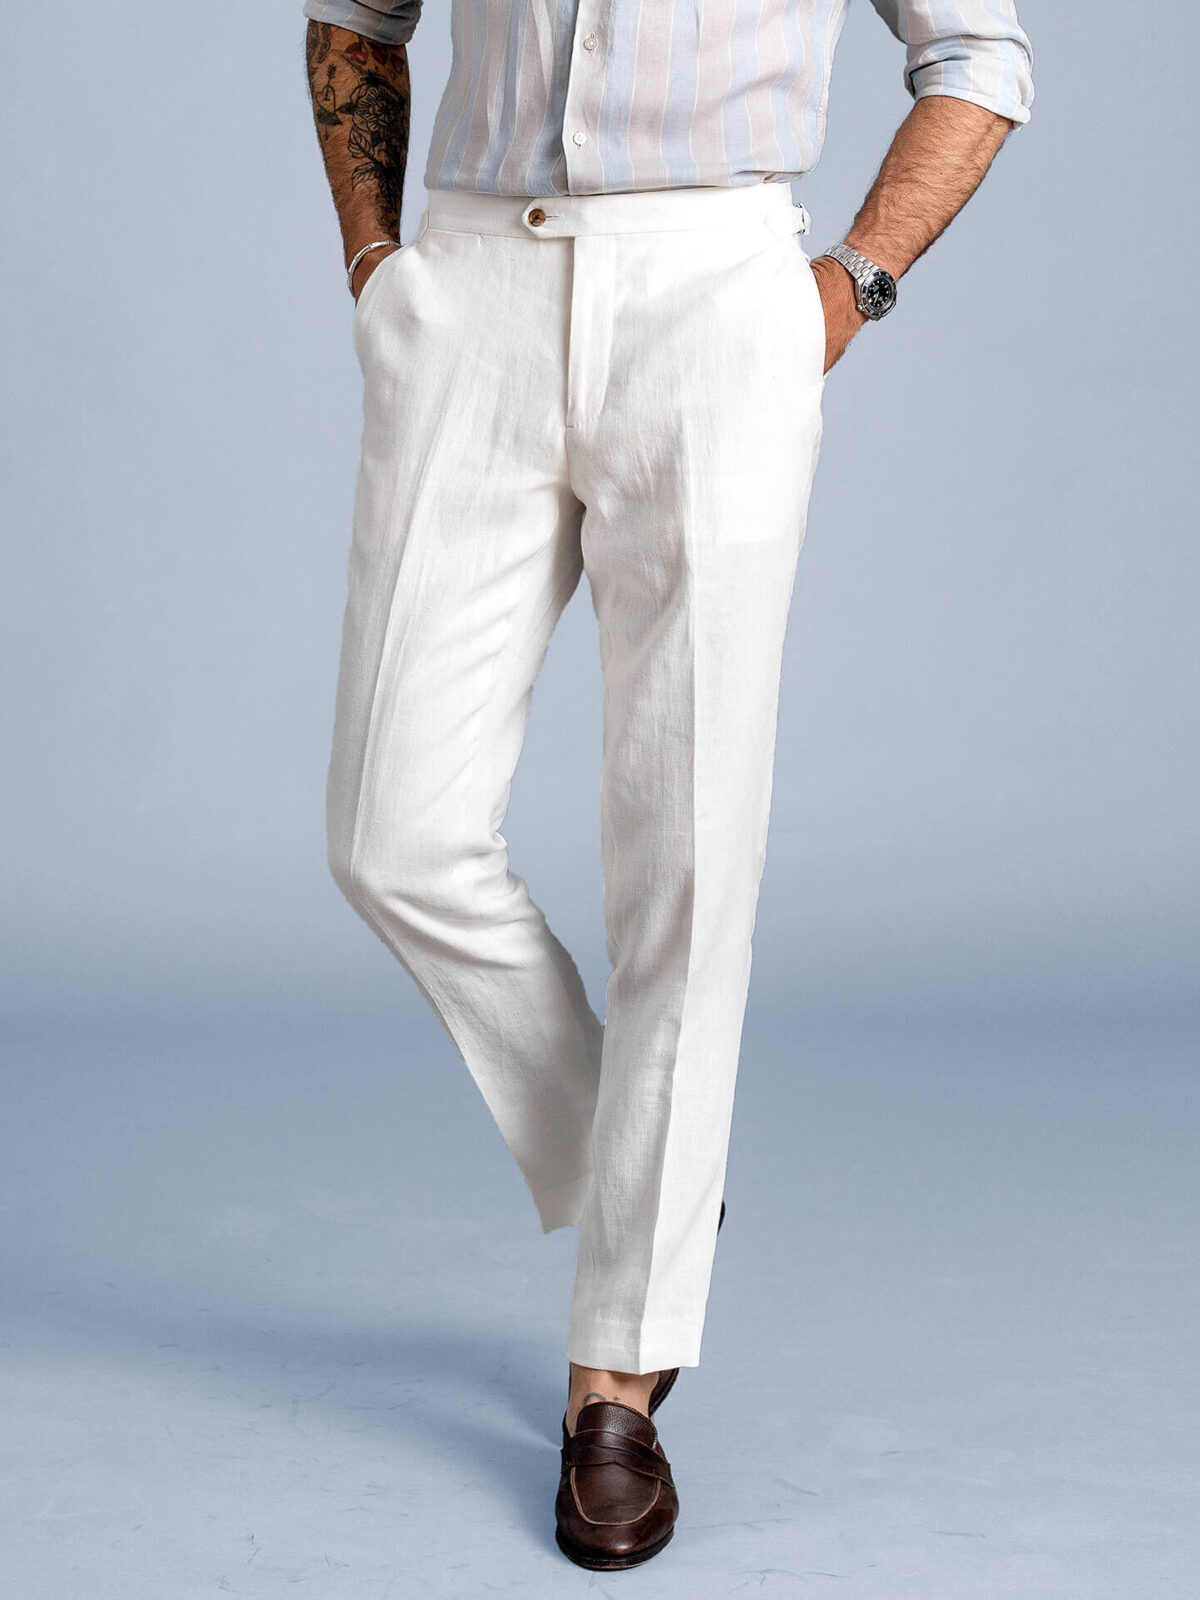 Men's White Linen Pants  Tailored Linen Pants -StudioSuits